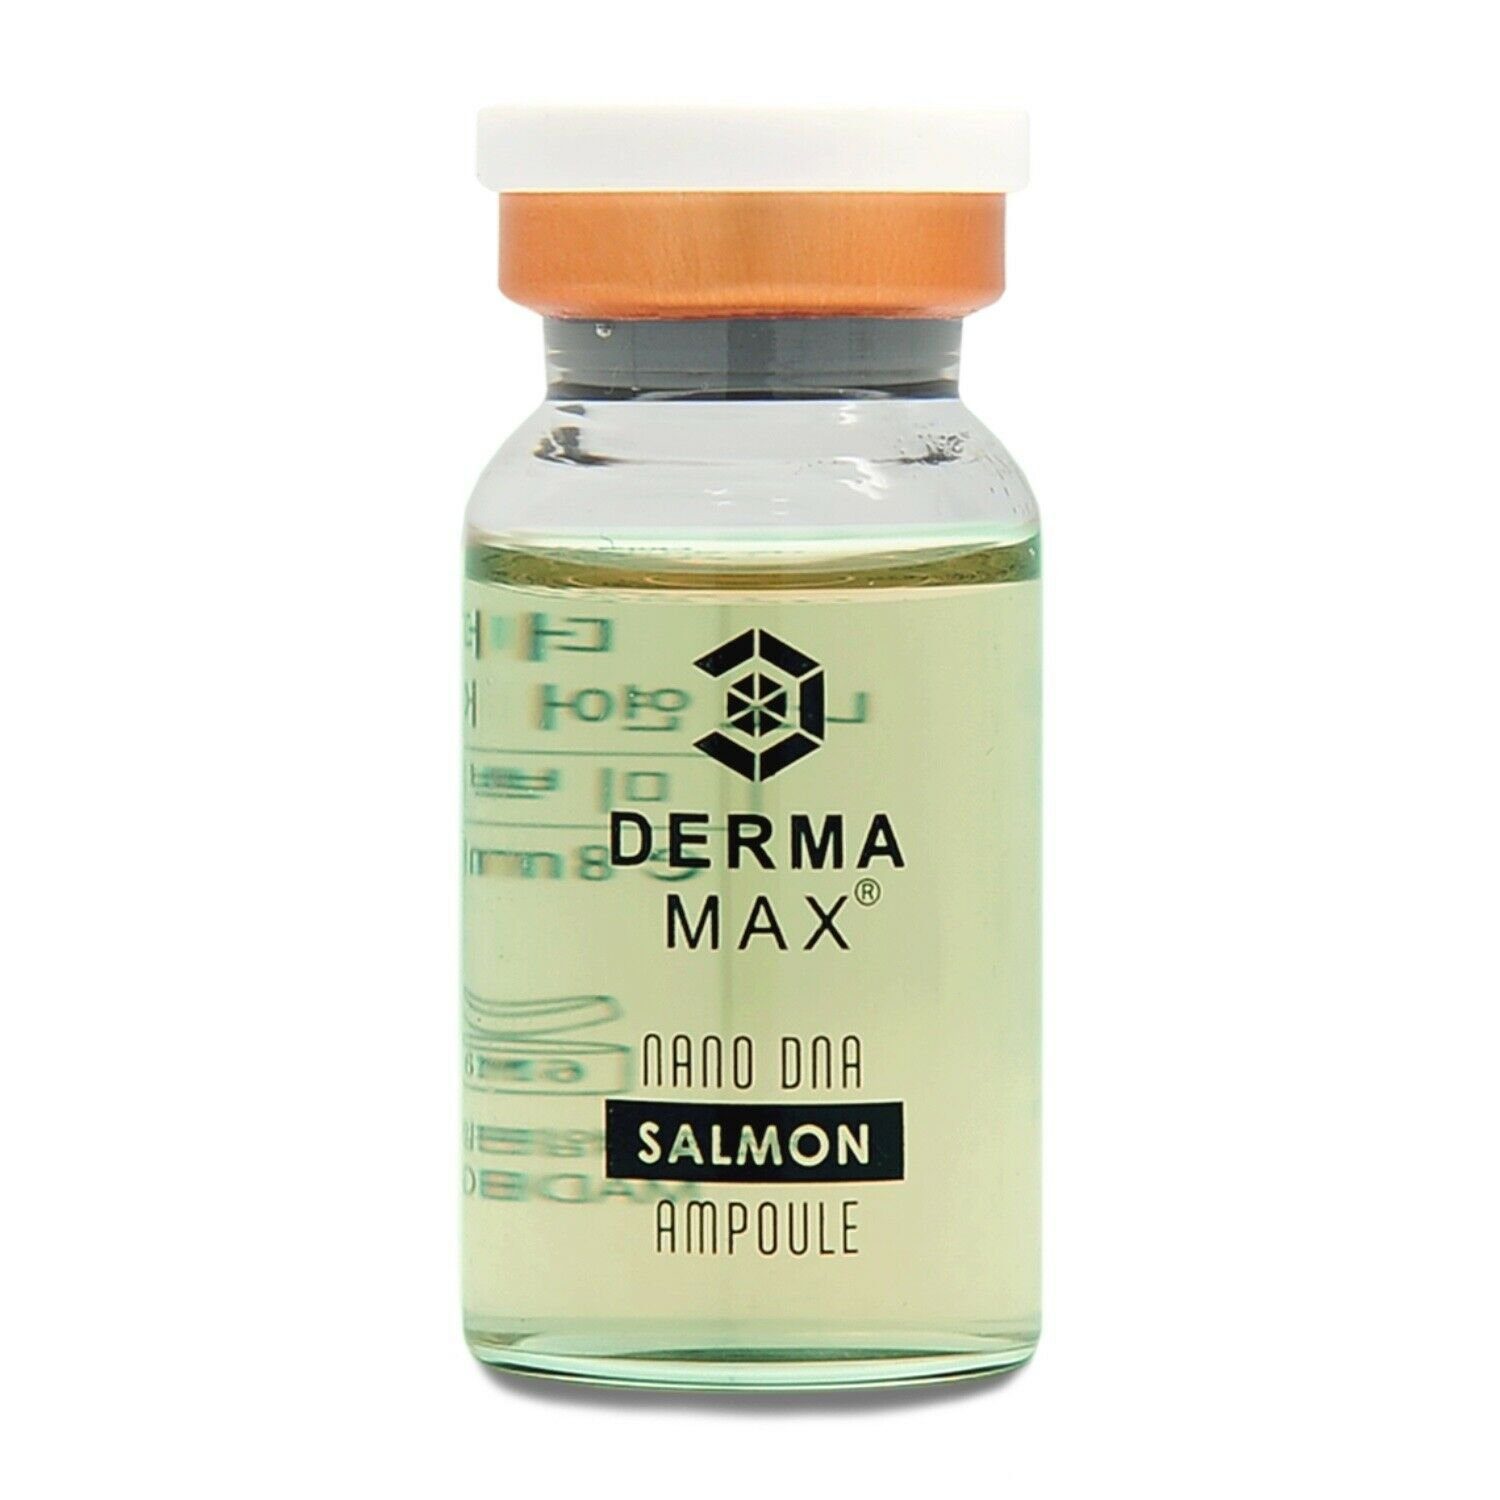 Dermamax Gesichtsserum DERMAMAX Booster Serum Premium Treatment Ampulle Ideal für Microneedling mit Dermaroller, Dermapen oder MTS speziell für Problemhaut SALMON 8ml